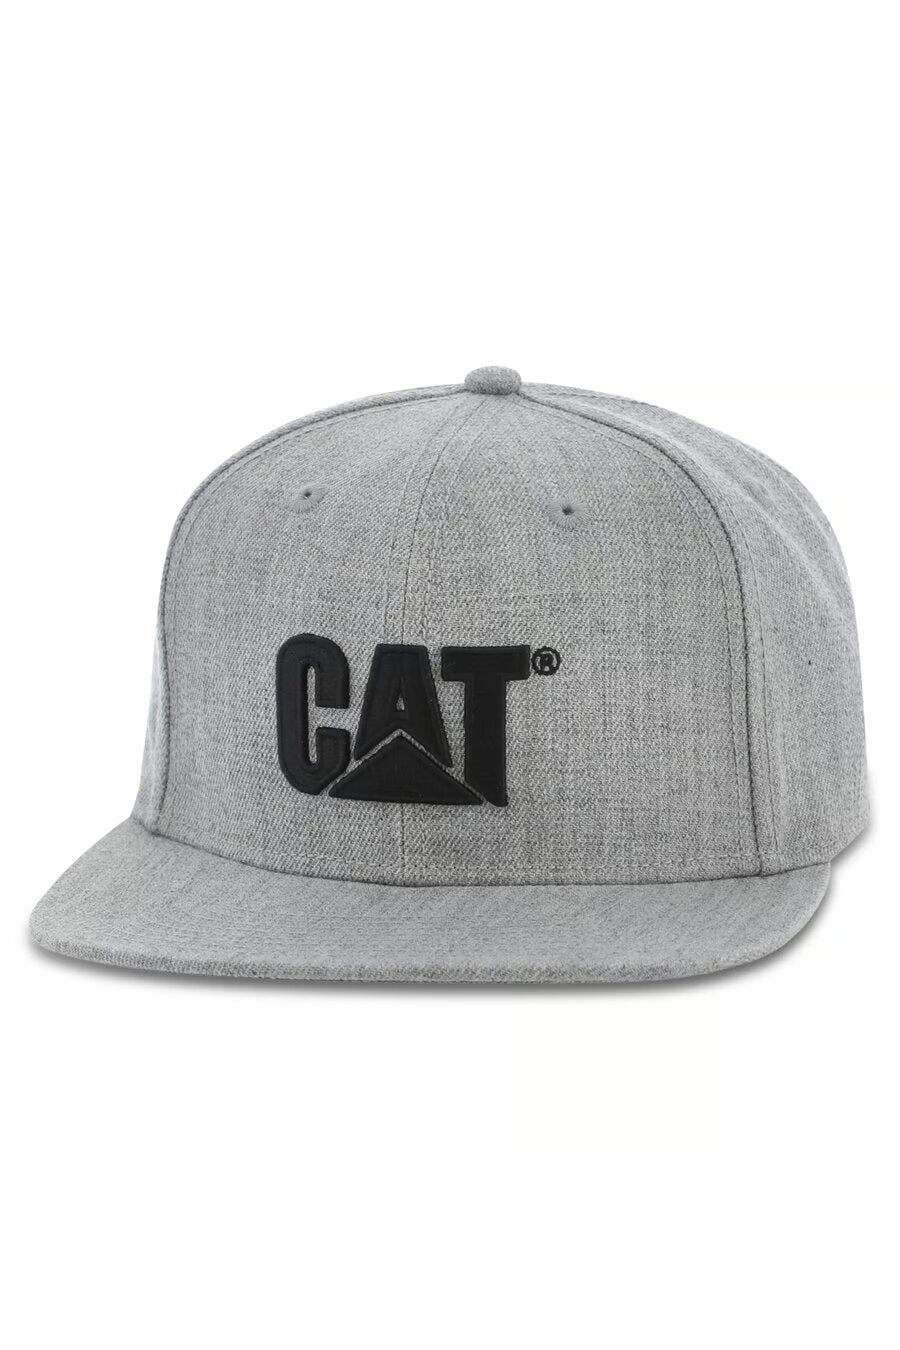 CAT Sheridan Flat Bill Caps